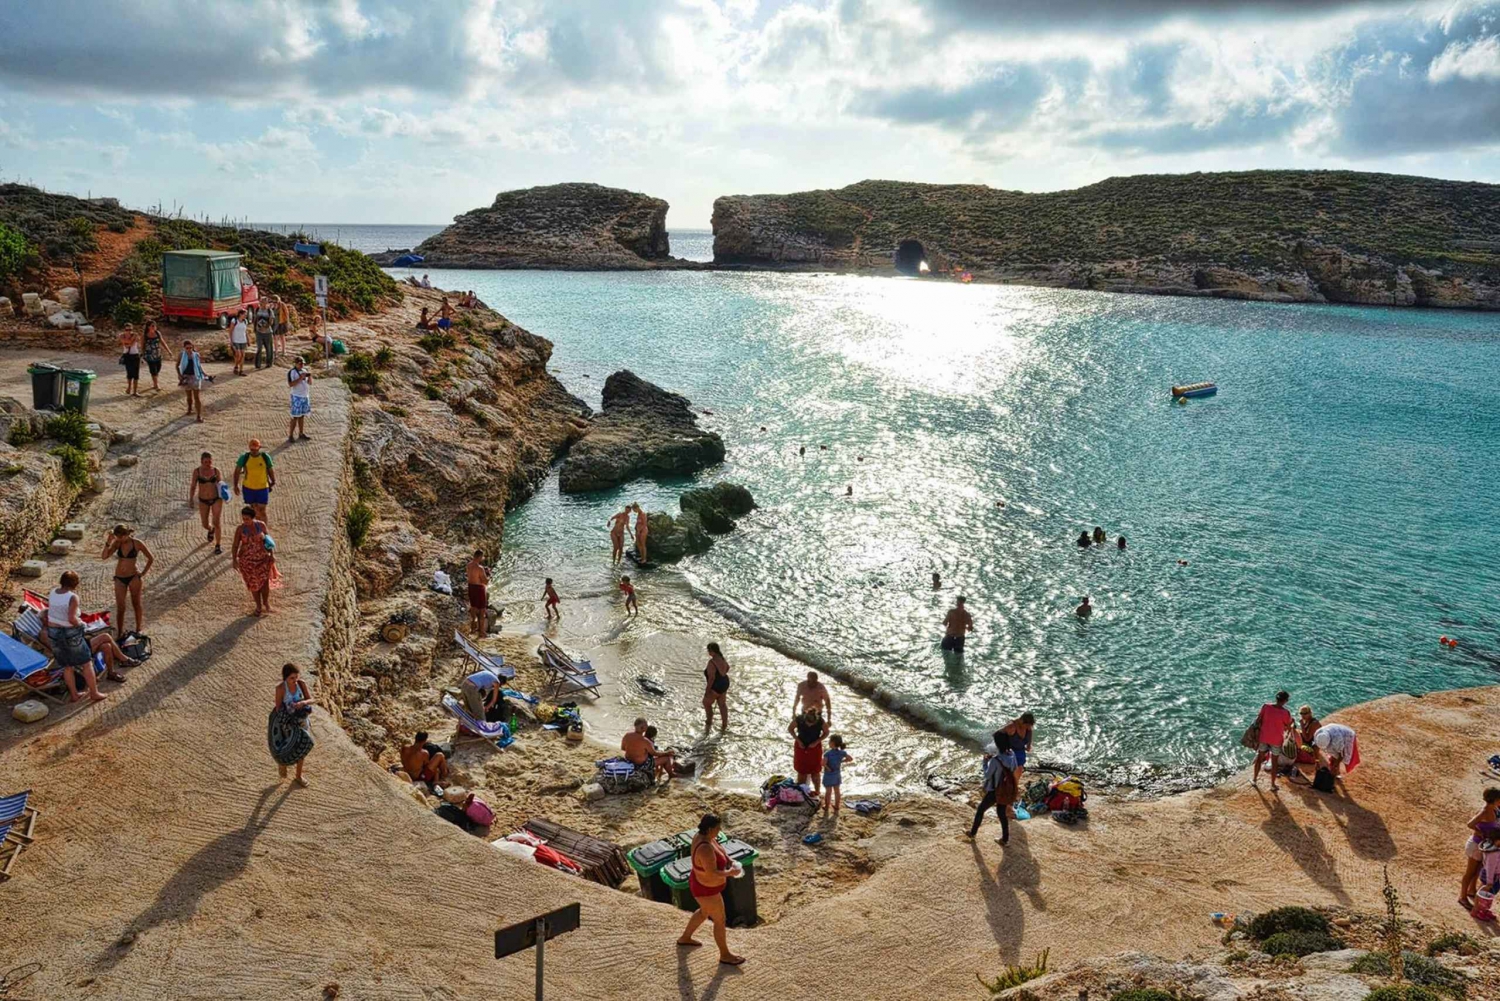 Malta: Sunset Cruise to the Blue Lagoon